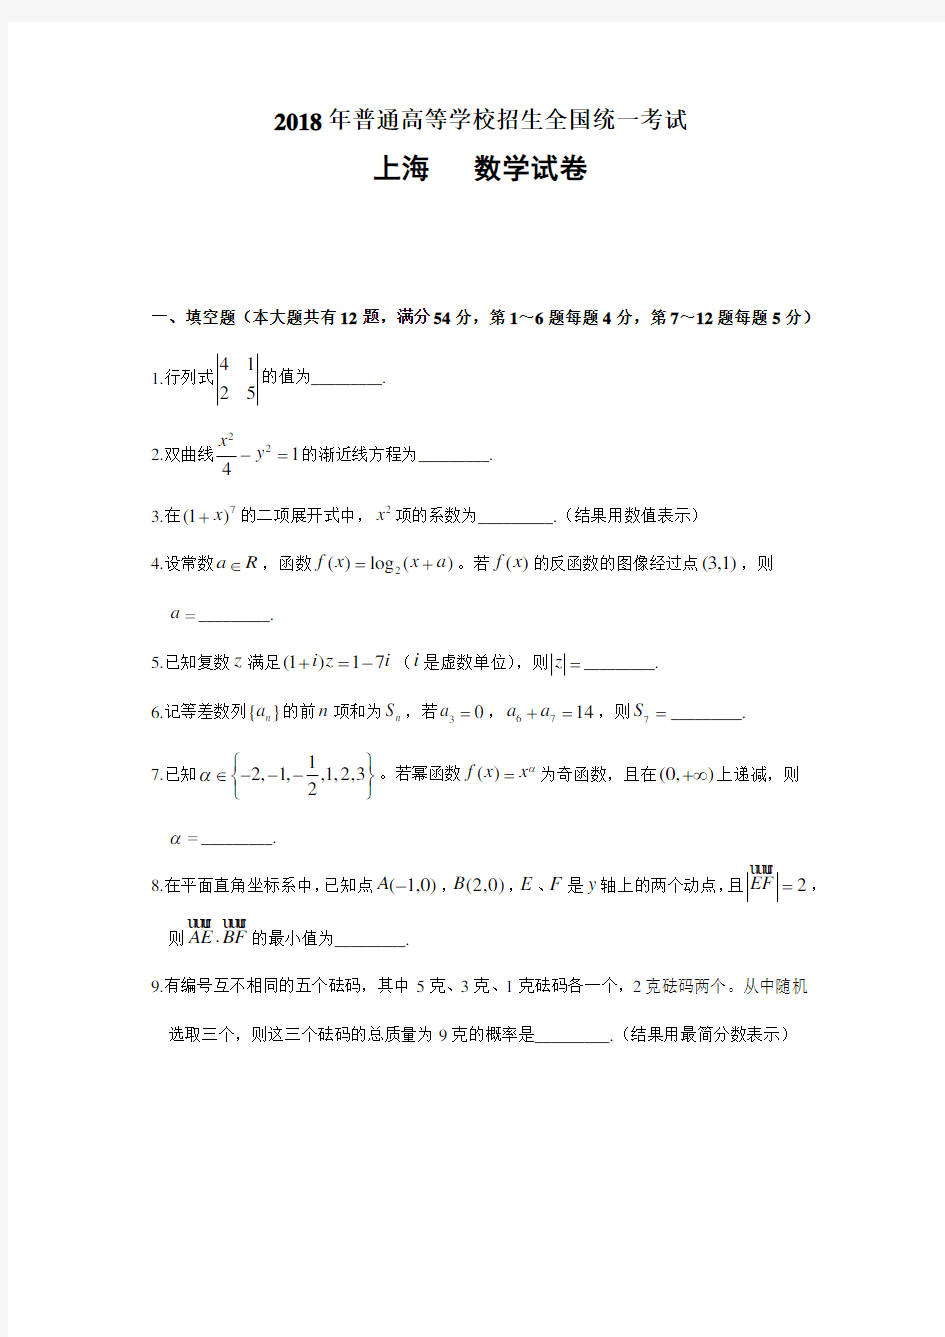 (完整版)2018年上海高考数学试卷(参考答案)